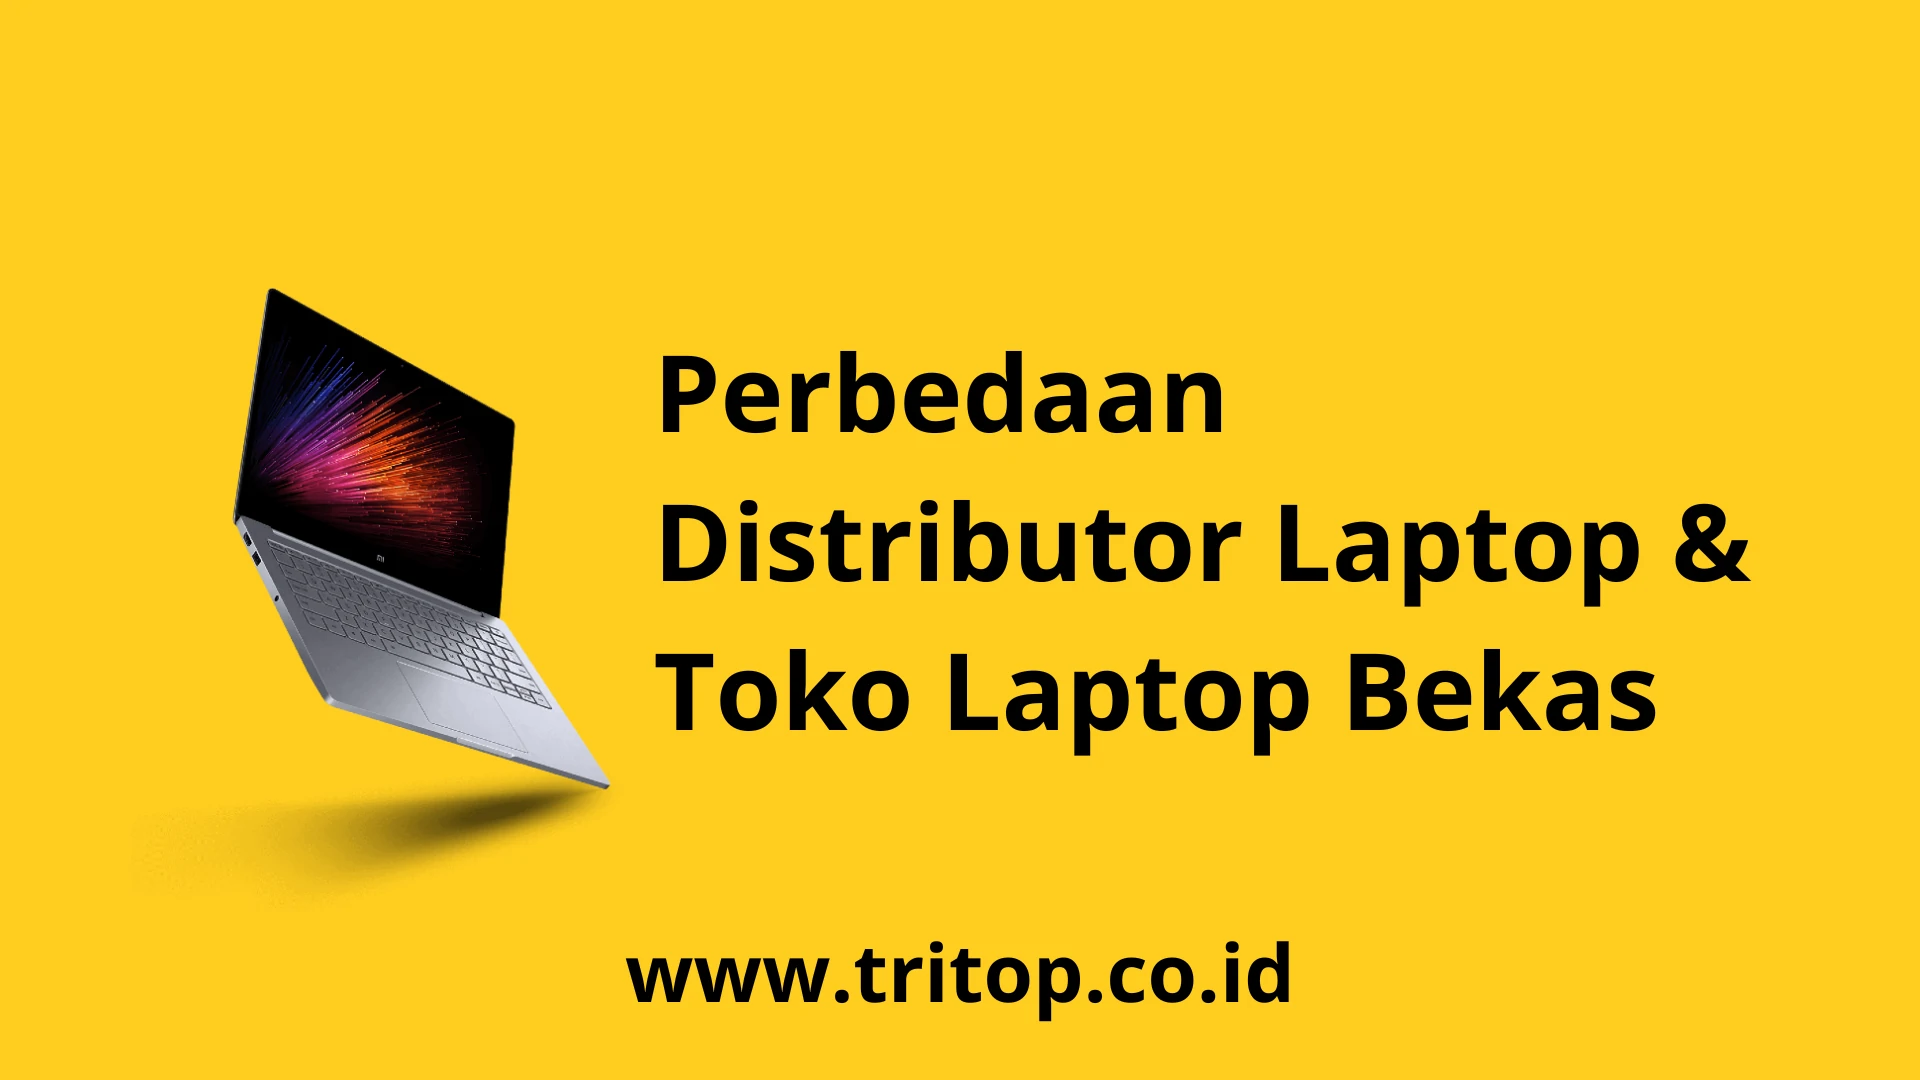 Distributor Laptop Bekas Tritop.co.id